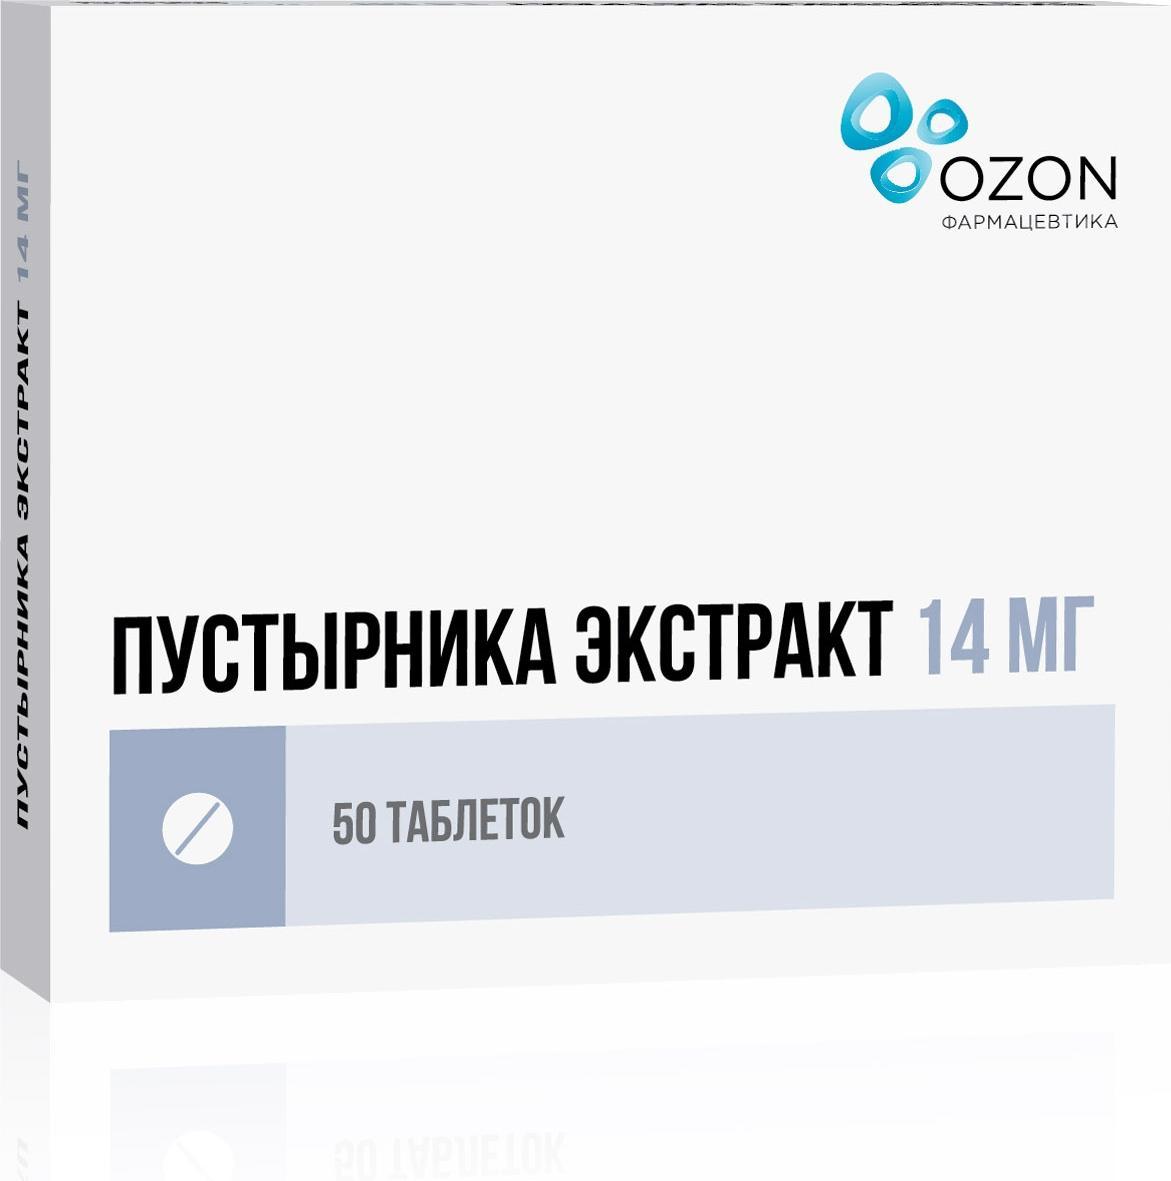 Пустырника экстракт, таблетки 14 мг (Озон), 50 шт.